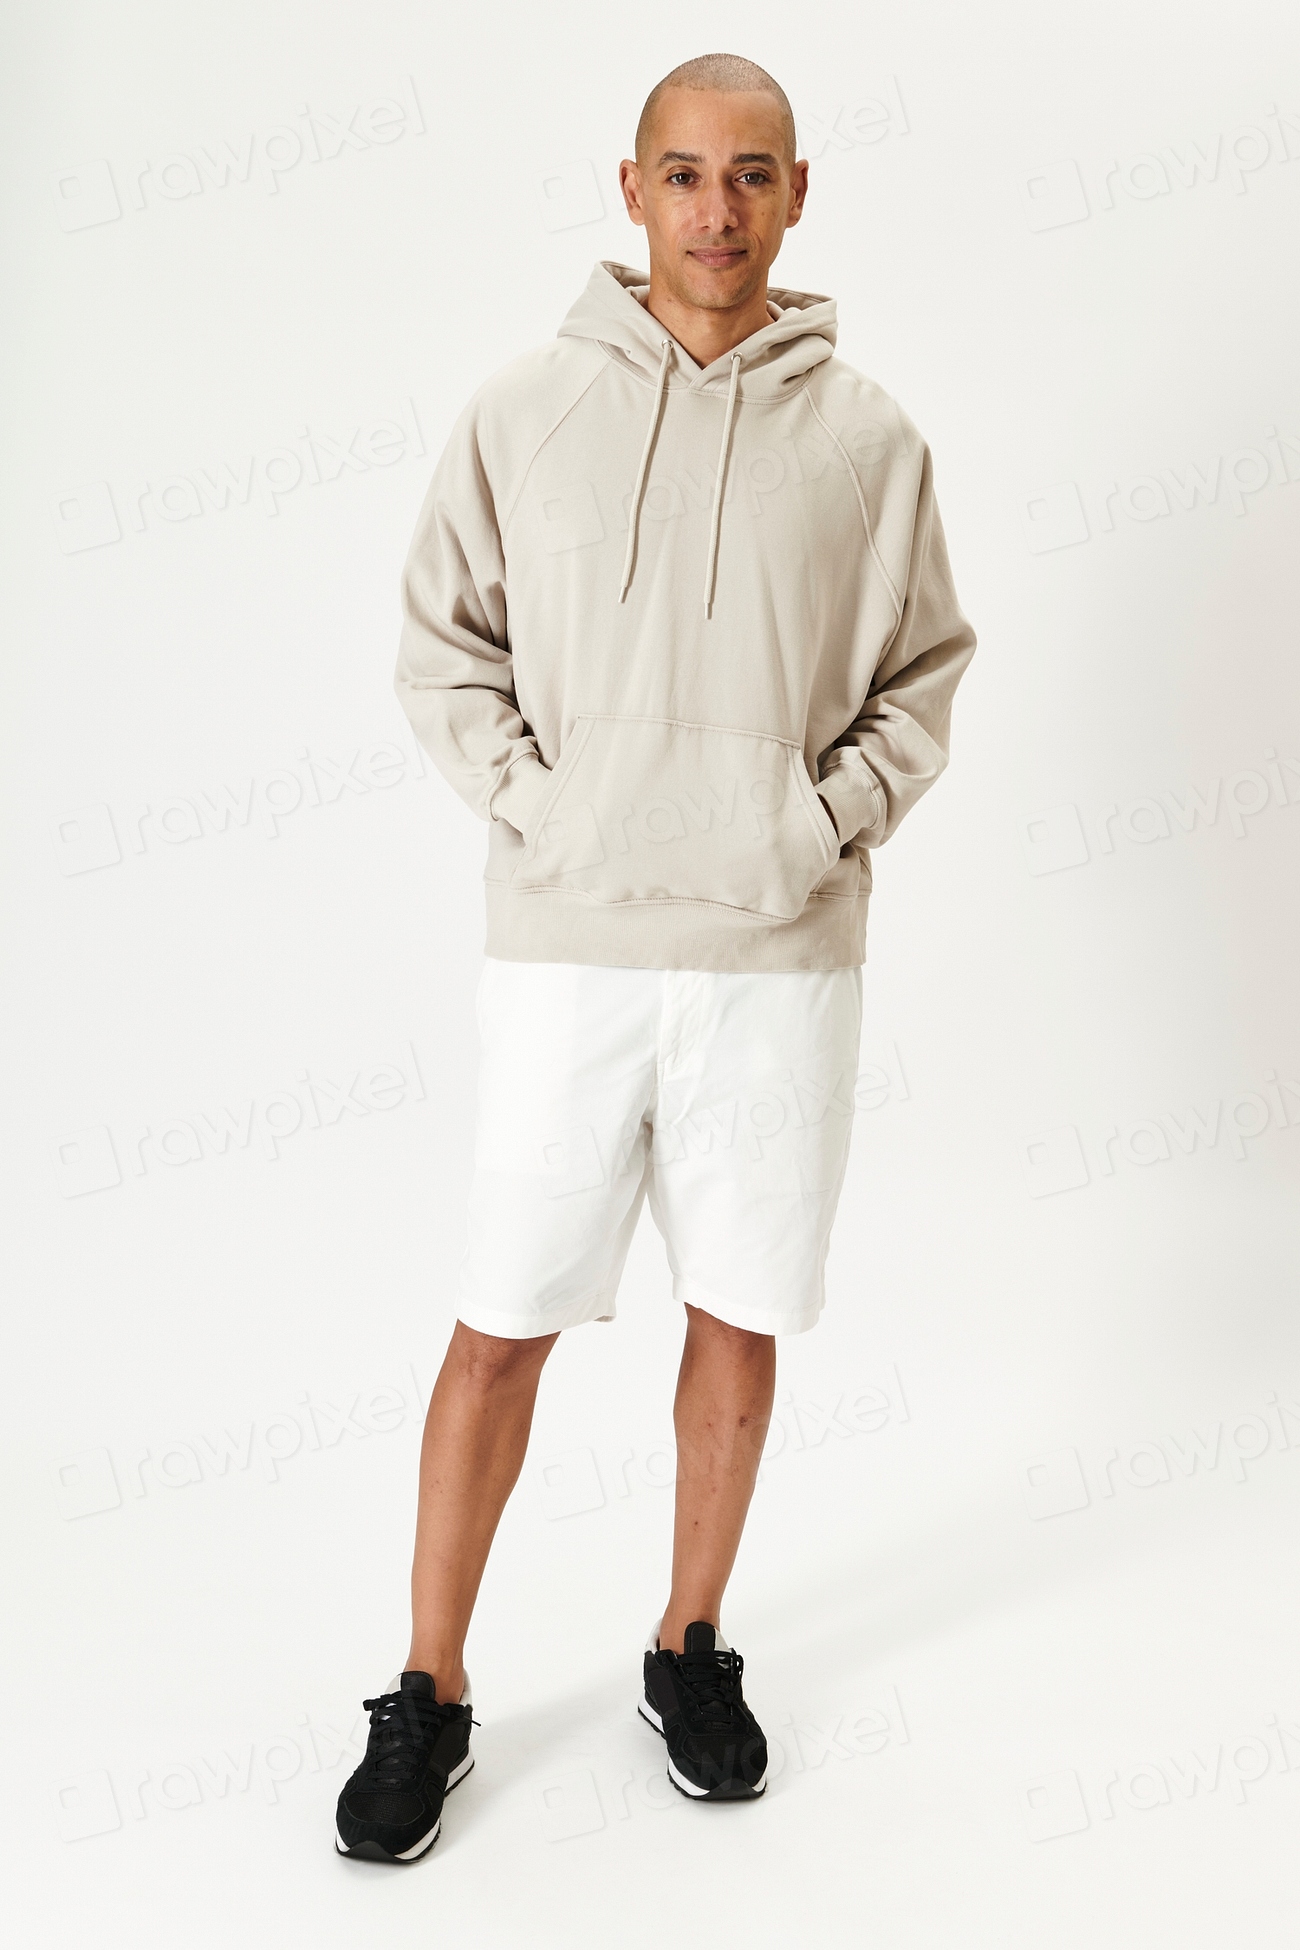 Men's beige hoodie sweatshirt mockup | Premium Photo - rawpixel